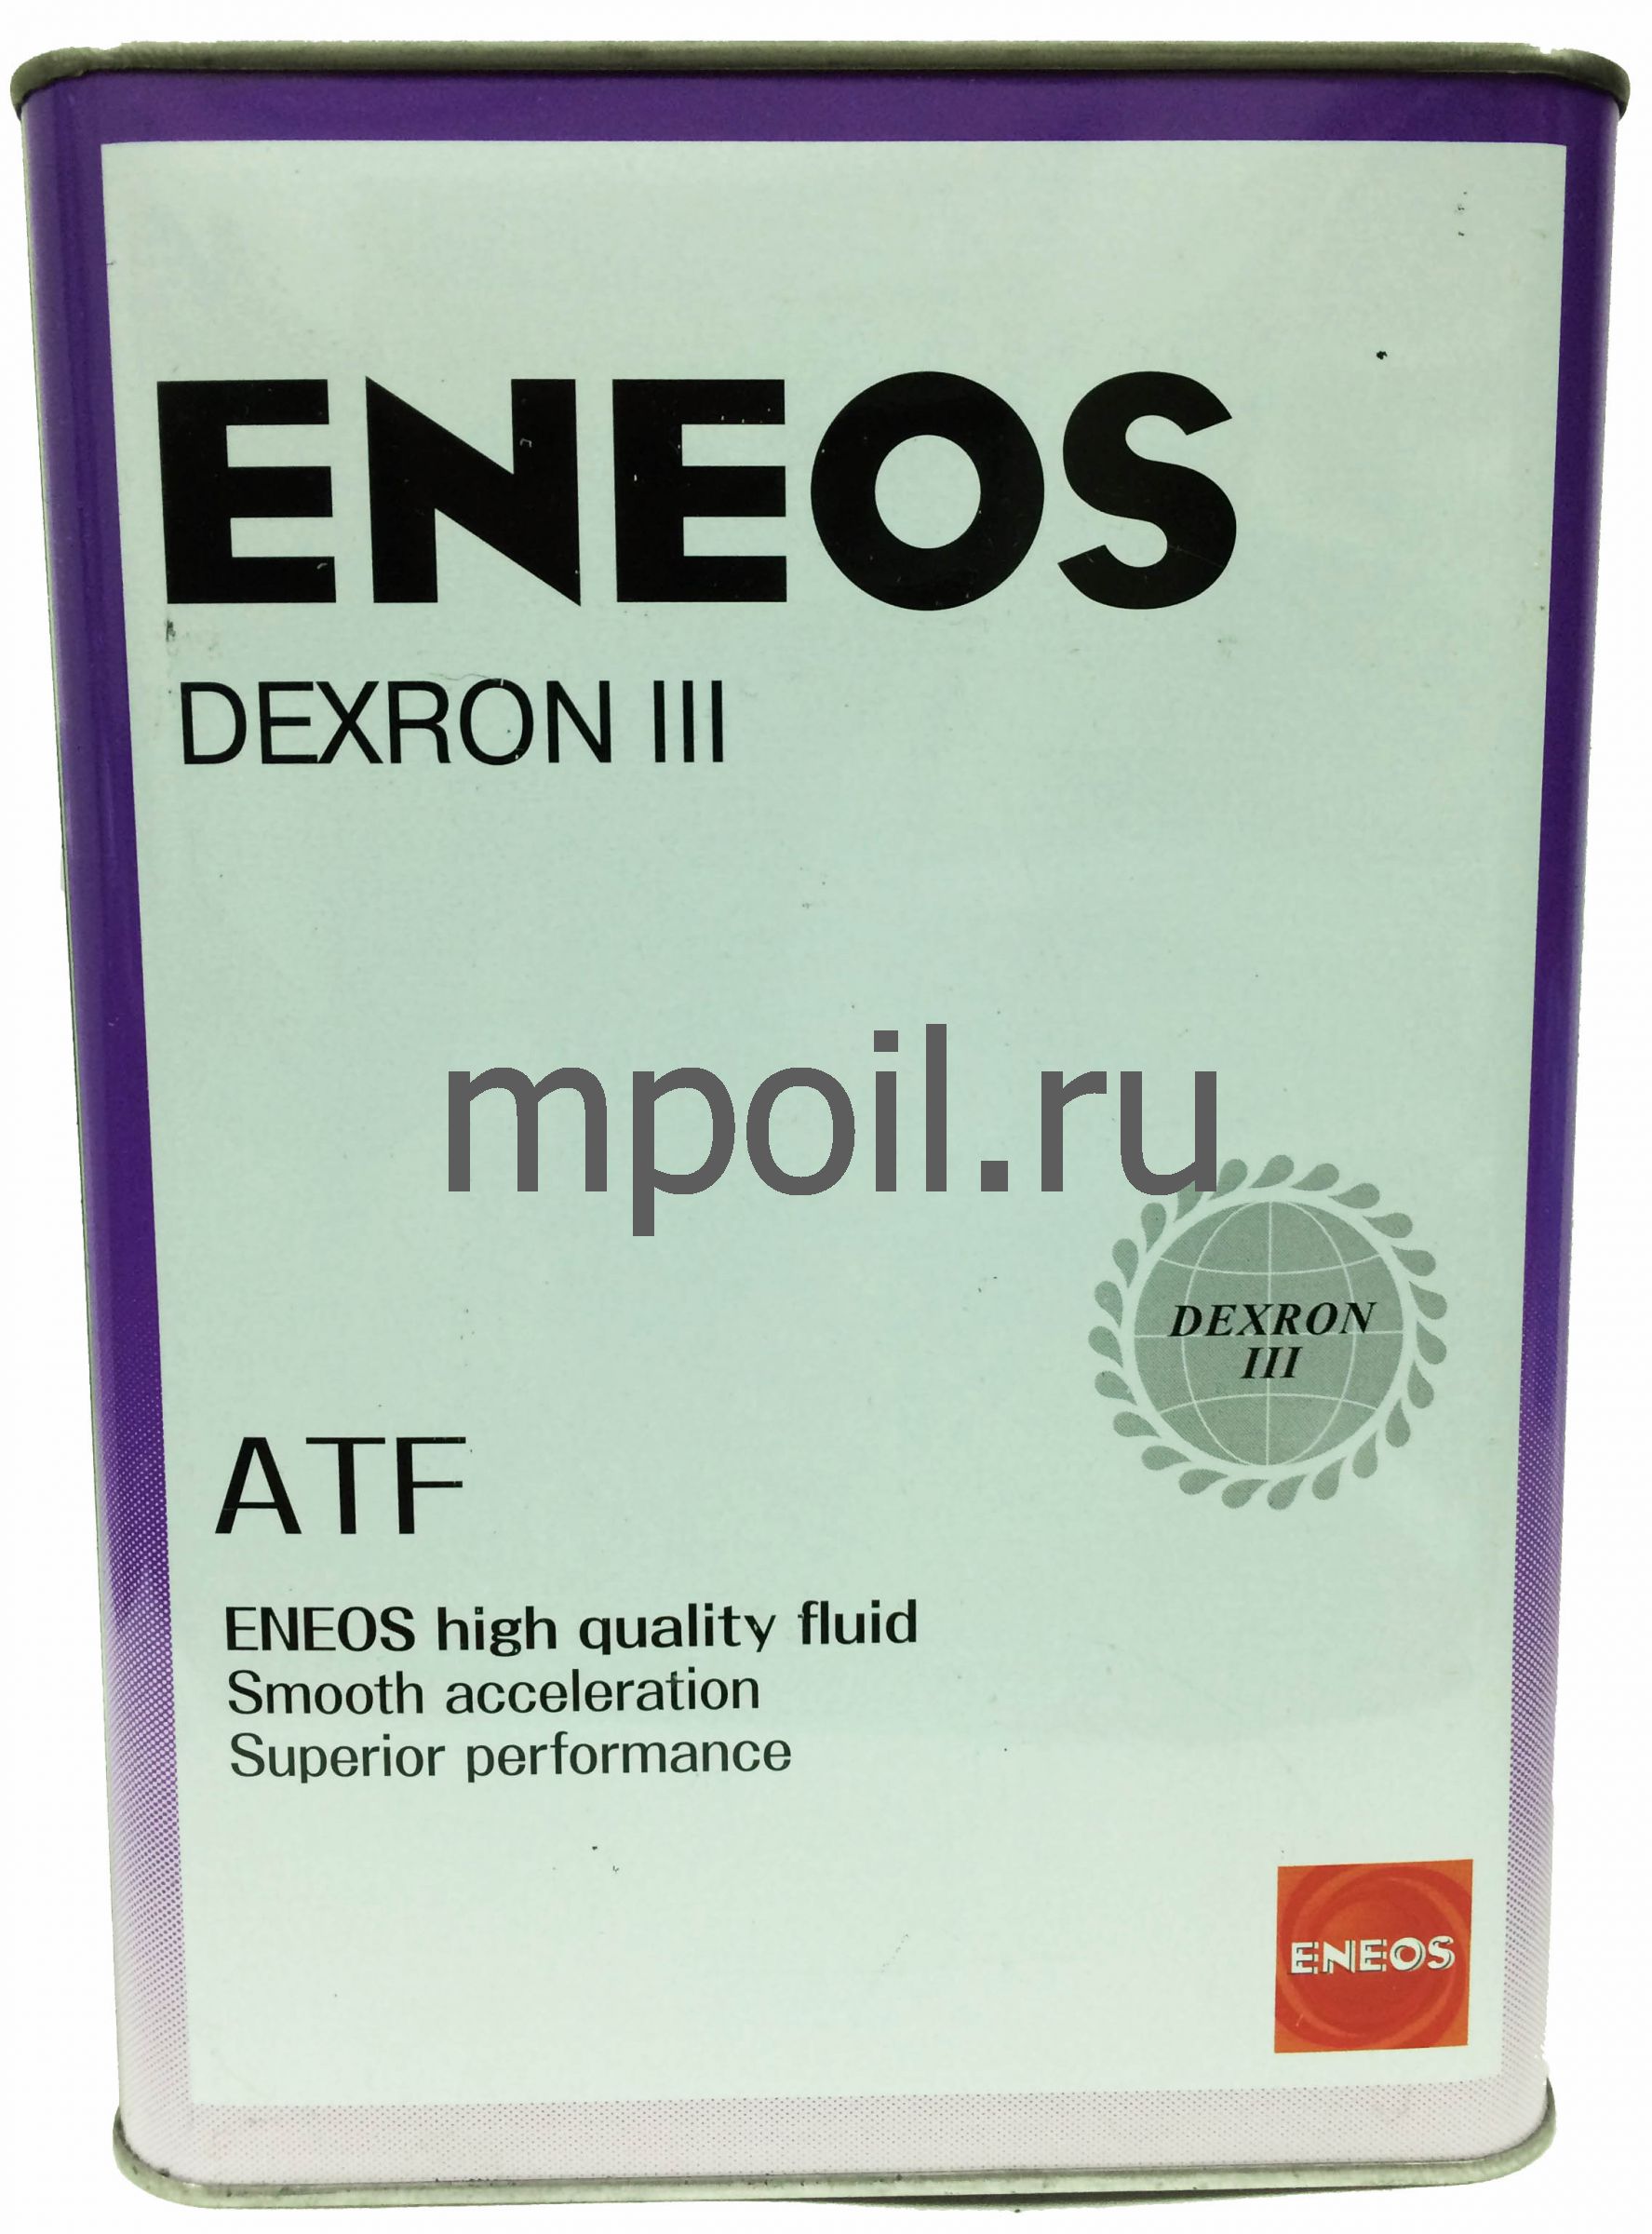 Eneos atf dexron. Декстрон 3 ENEOS. Oil1309 ENEOS. Масло АТФ энеос декстрон 3. ENEOS масло ATF Dexron-lll 4л.